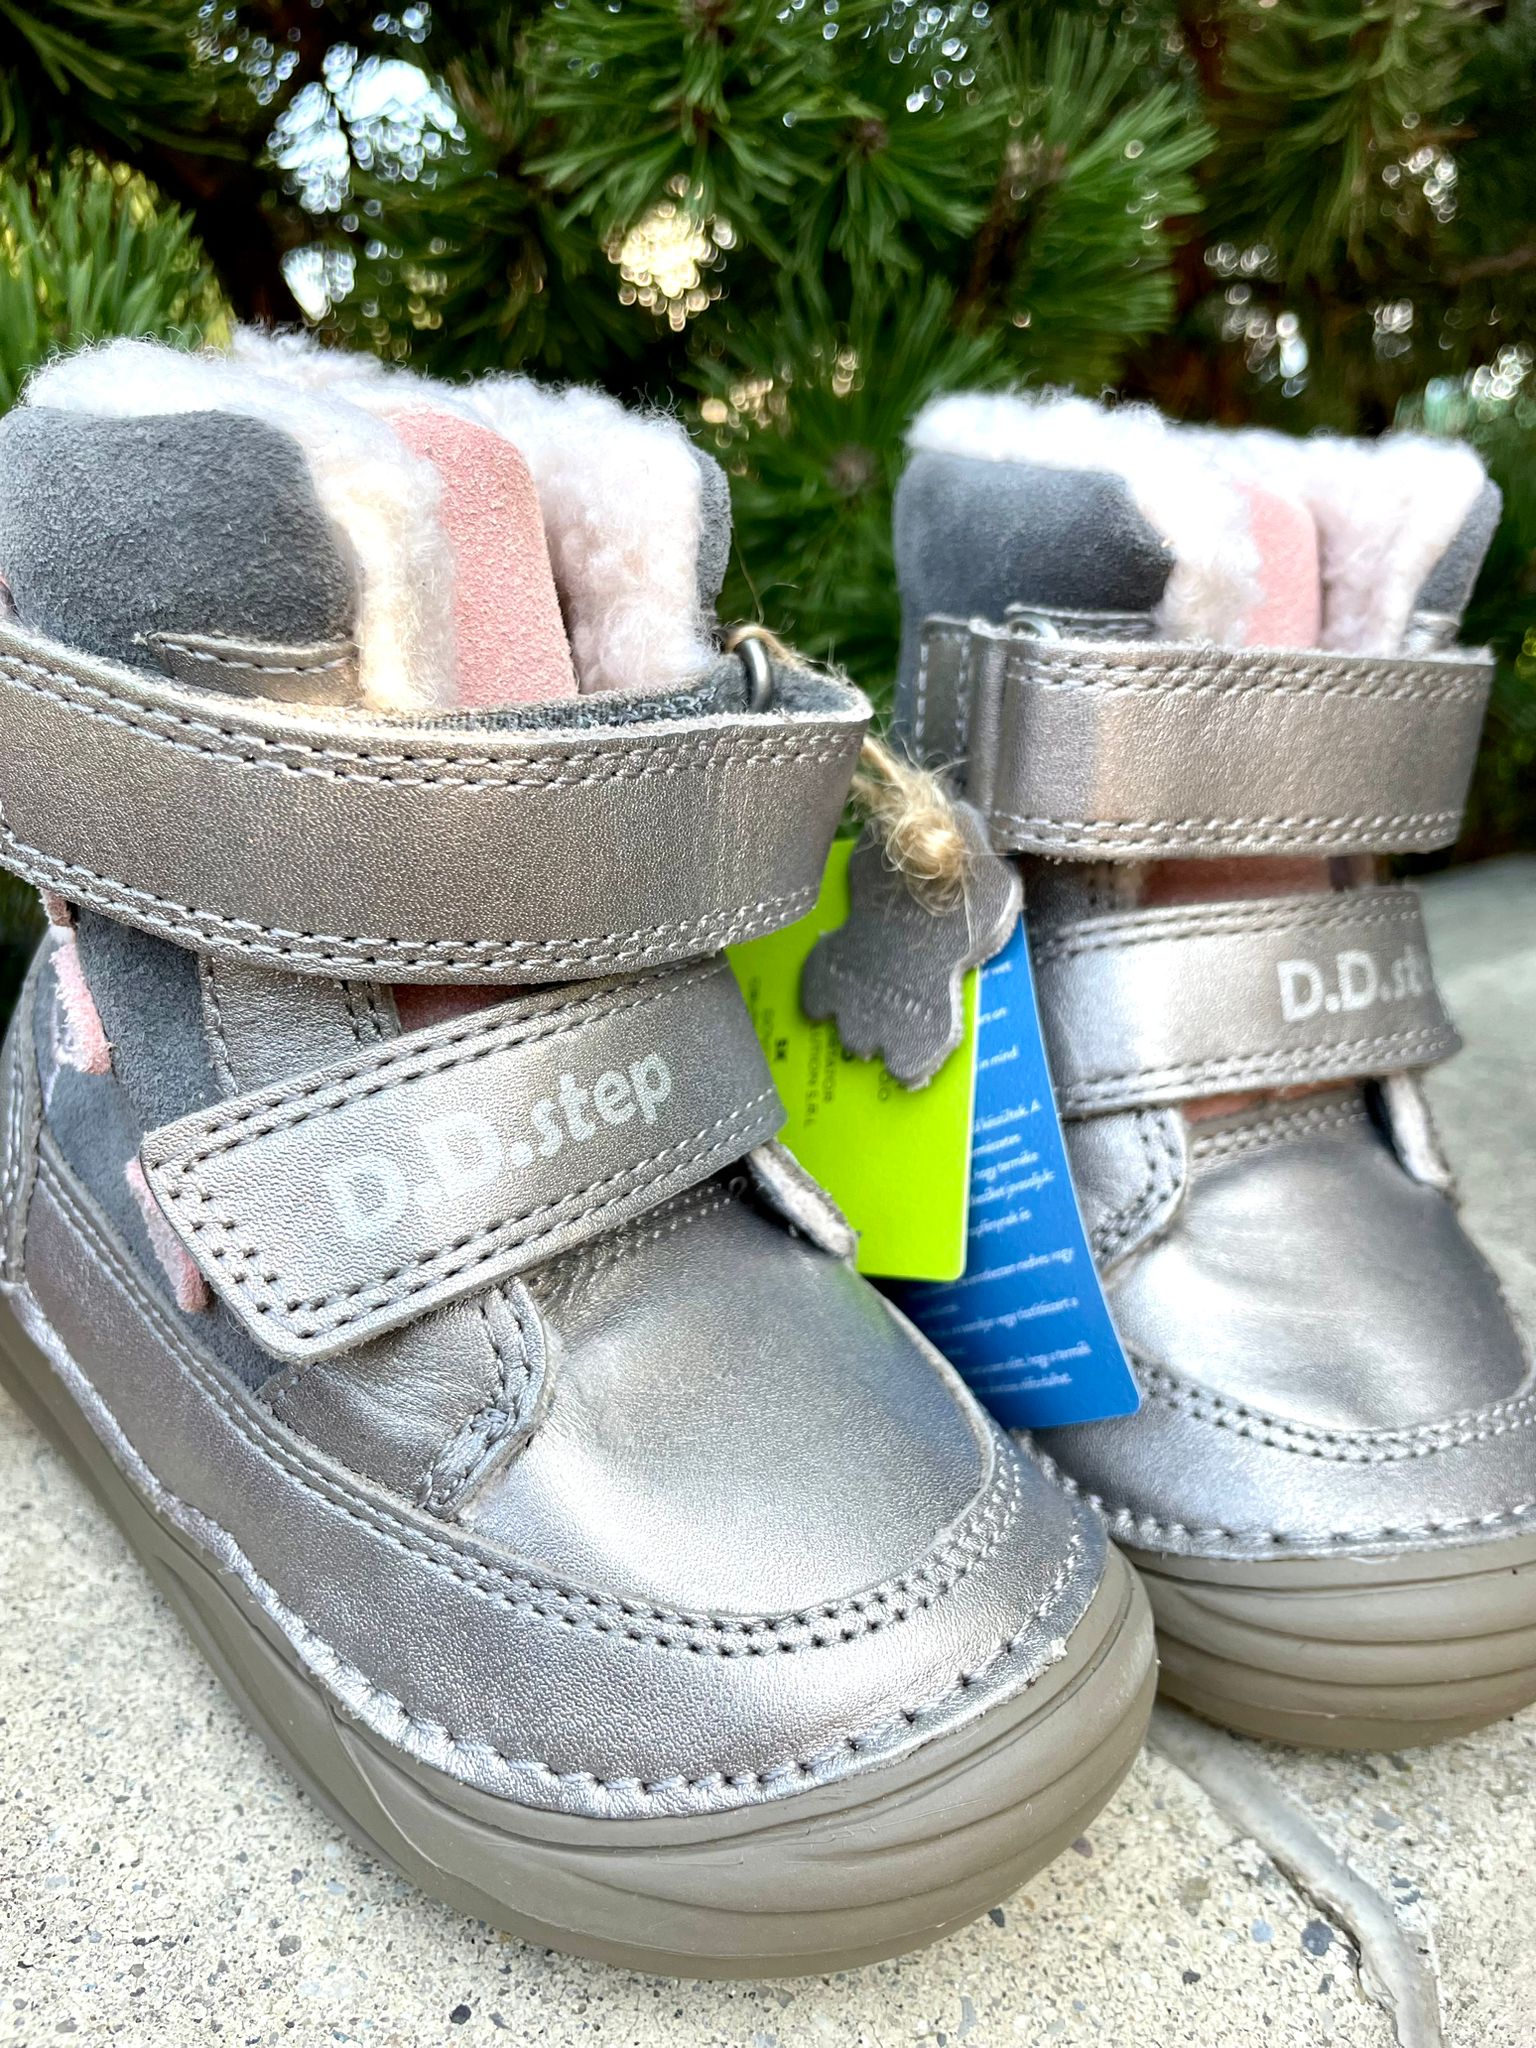 Zimné topánky s kožuškom KIARA grey D.D.Step FLEXI